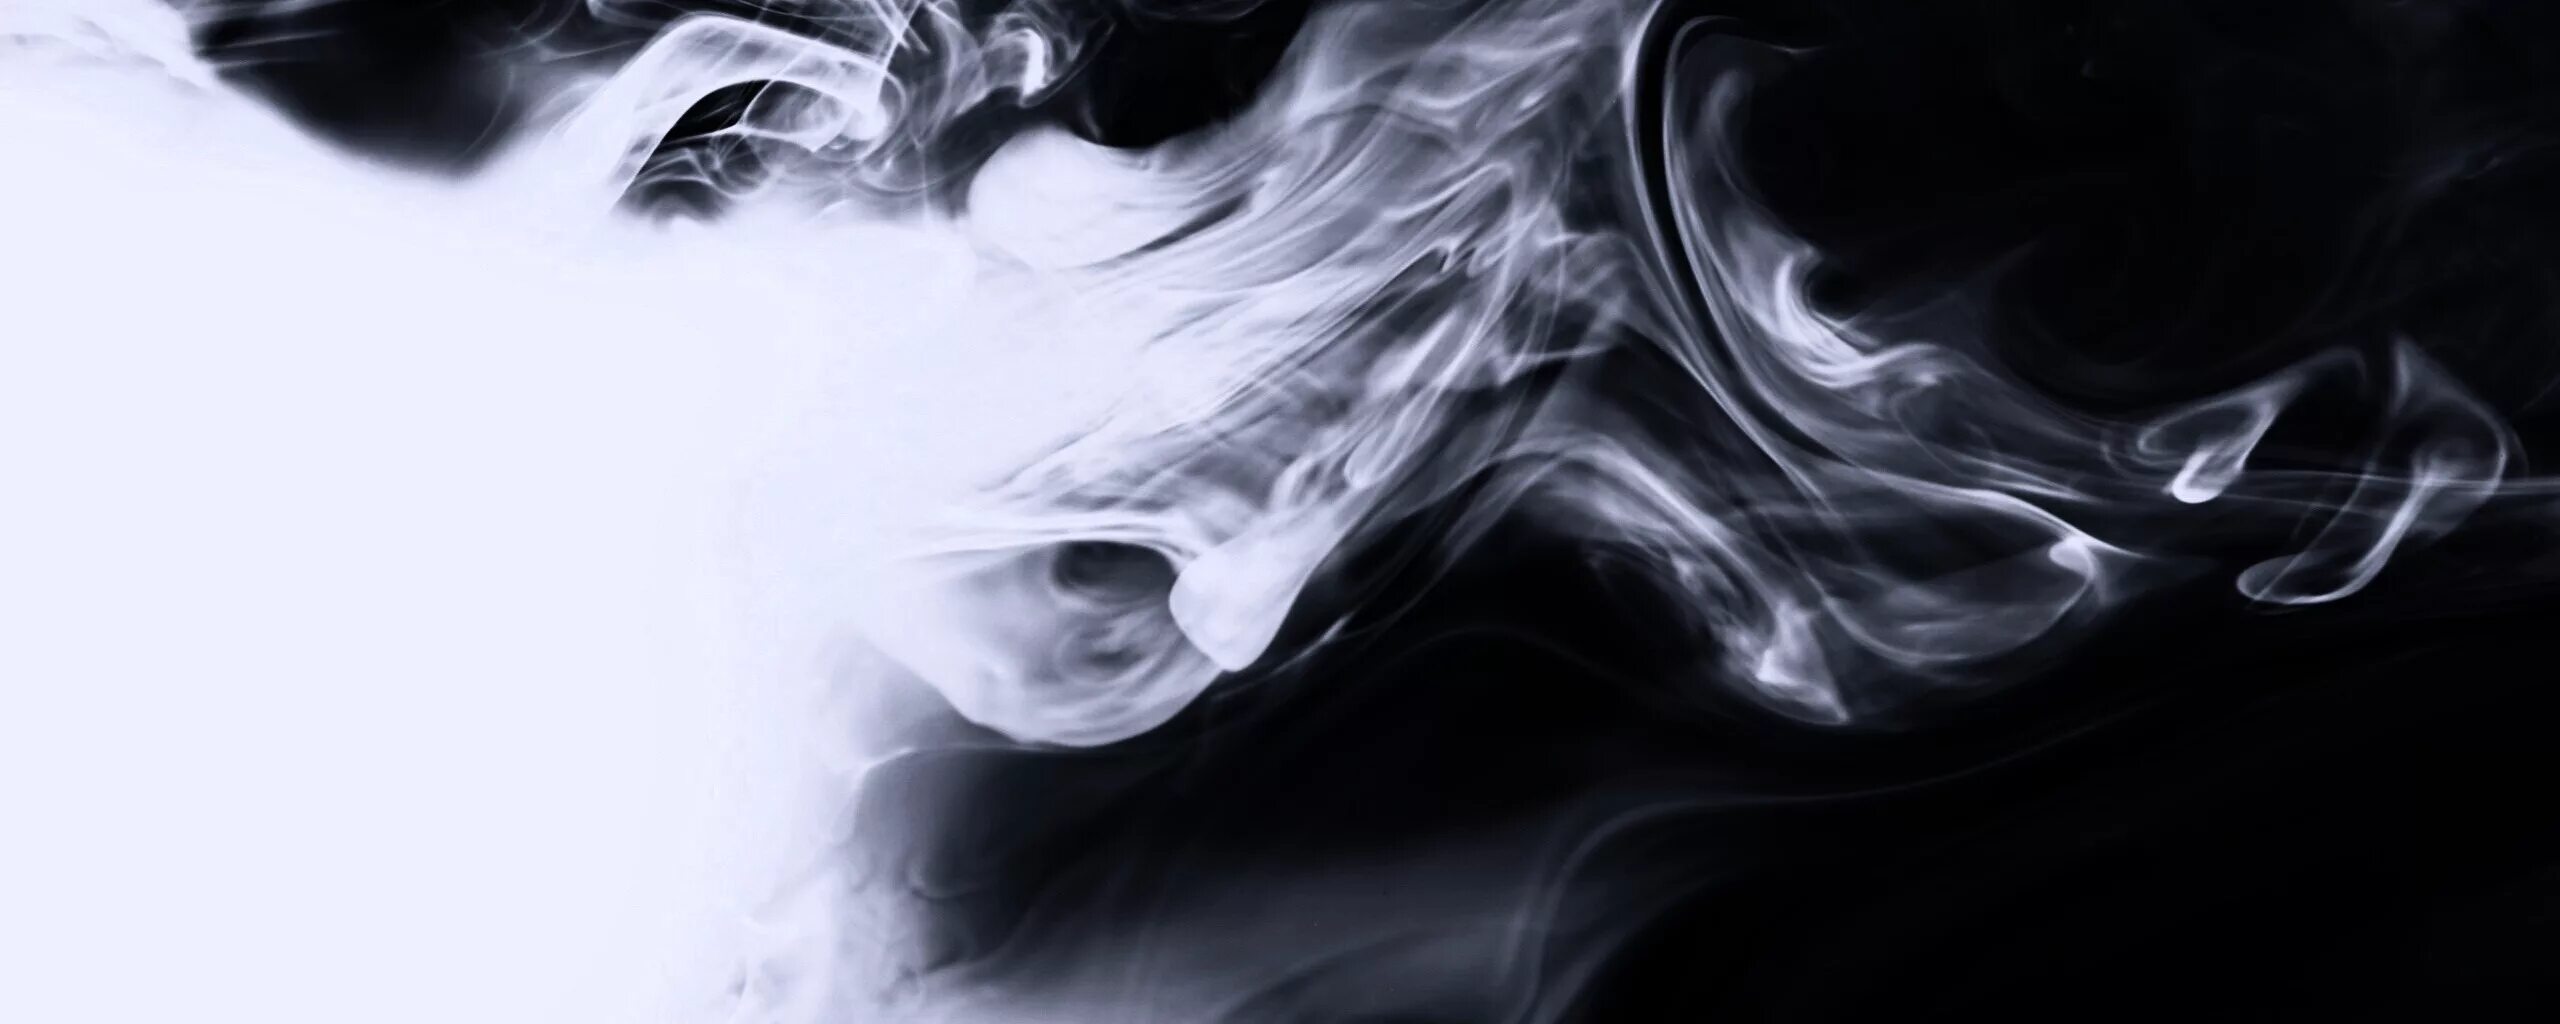 Л черный дым. Фон дым. Красивый серый дым. Дым на черном фоне. Дым для фотошопа.